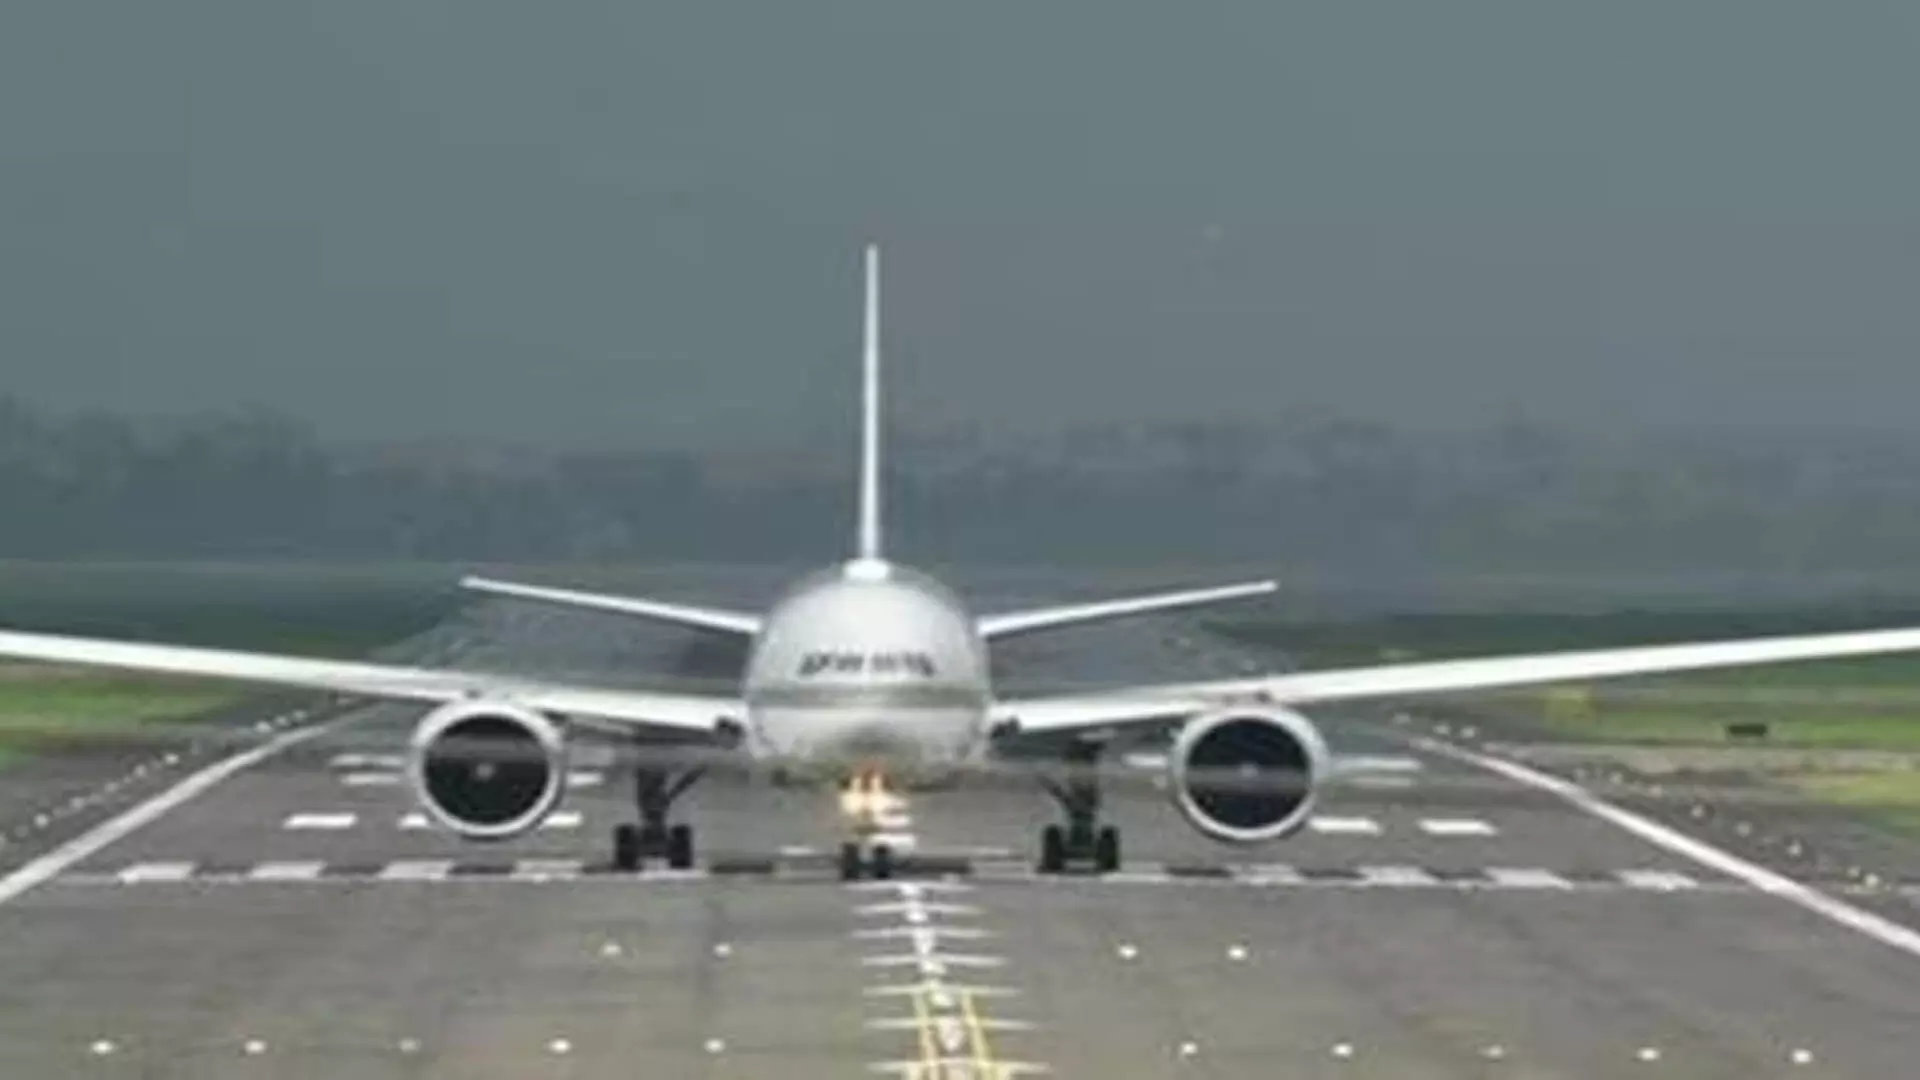 PUNE: पुणे-दिल्ली इंडिगो फ्लाइट 22 जुलाई से नए एयरपोर्ट टर्मिनल से शुरू होगी